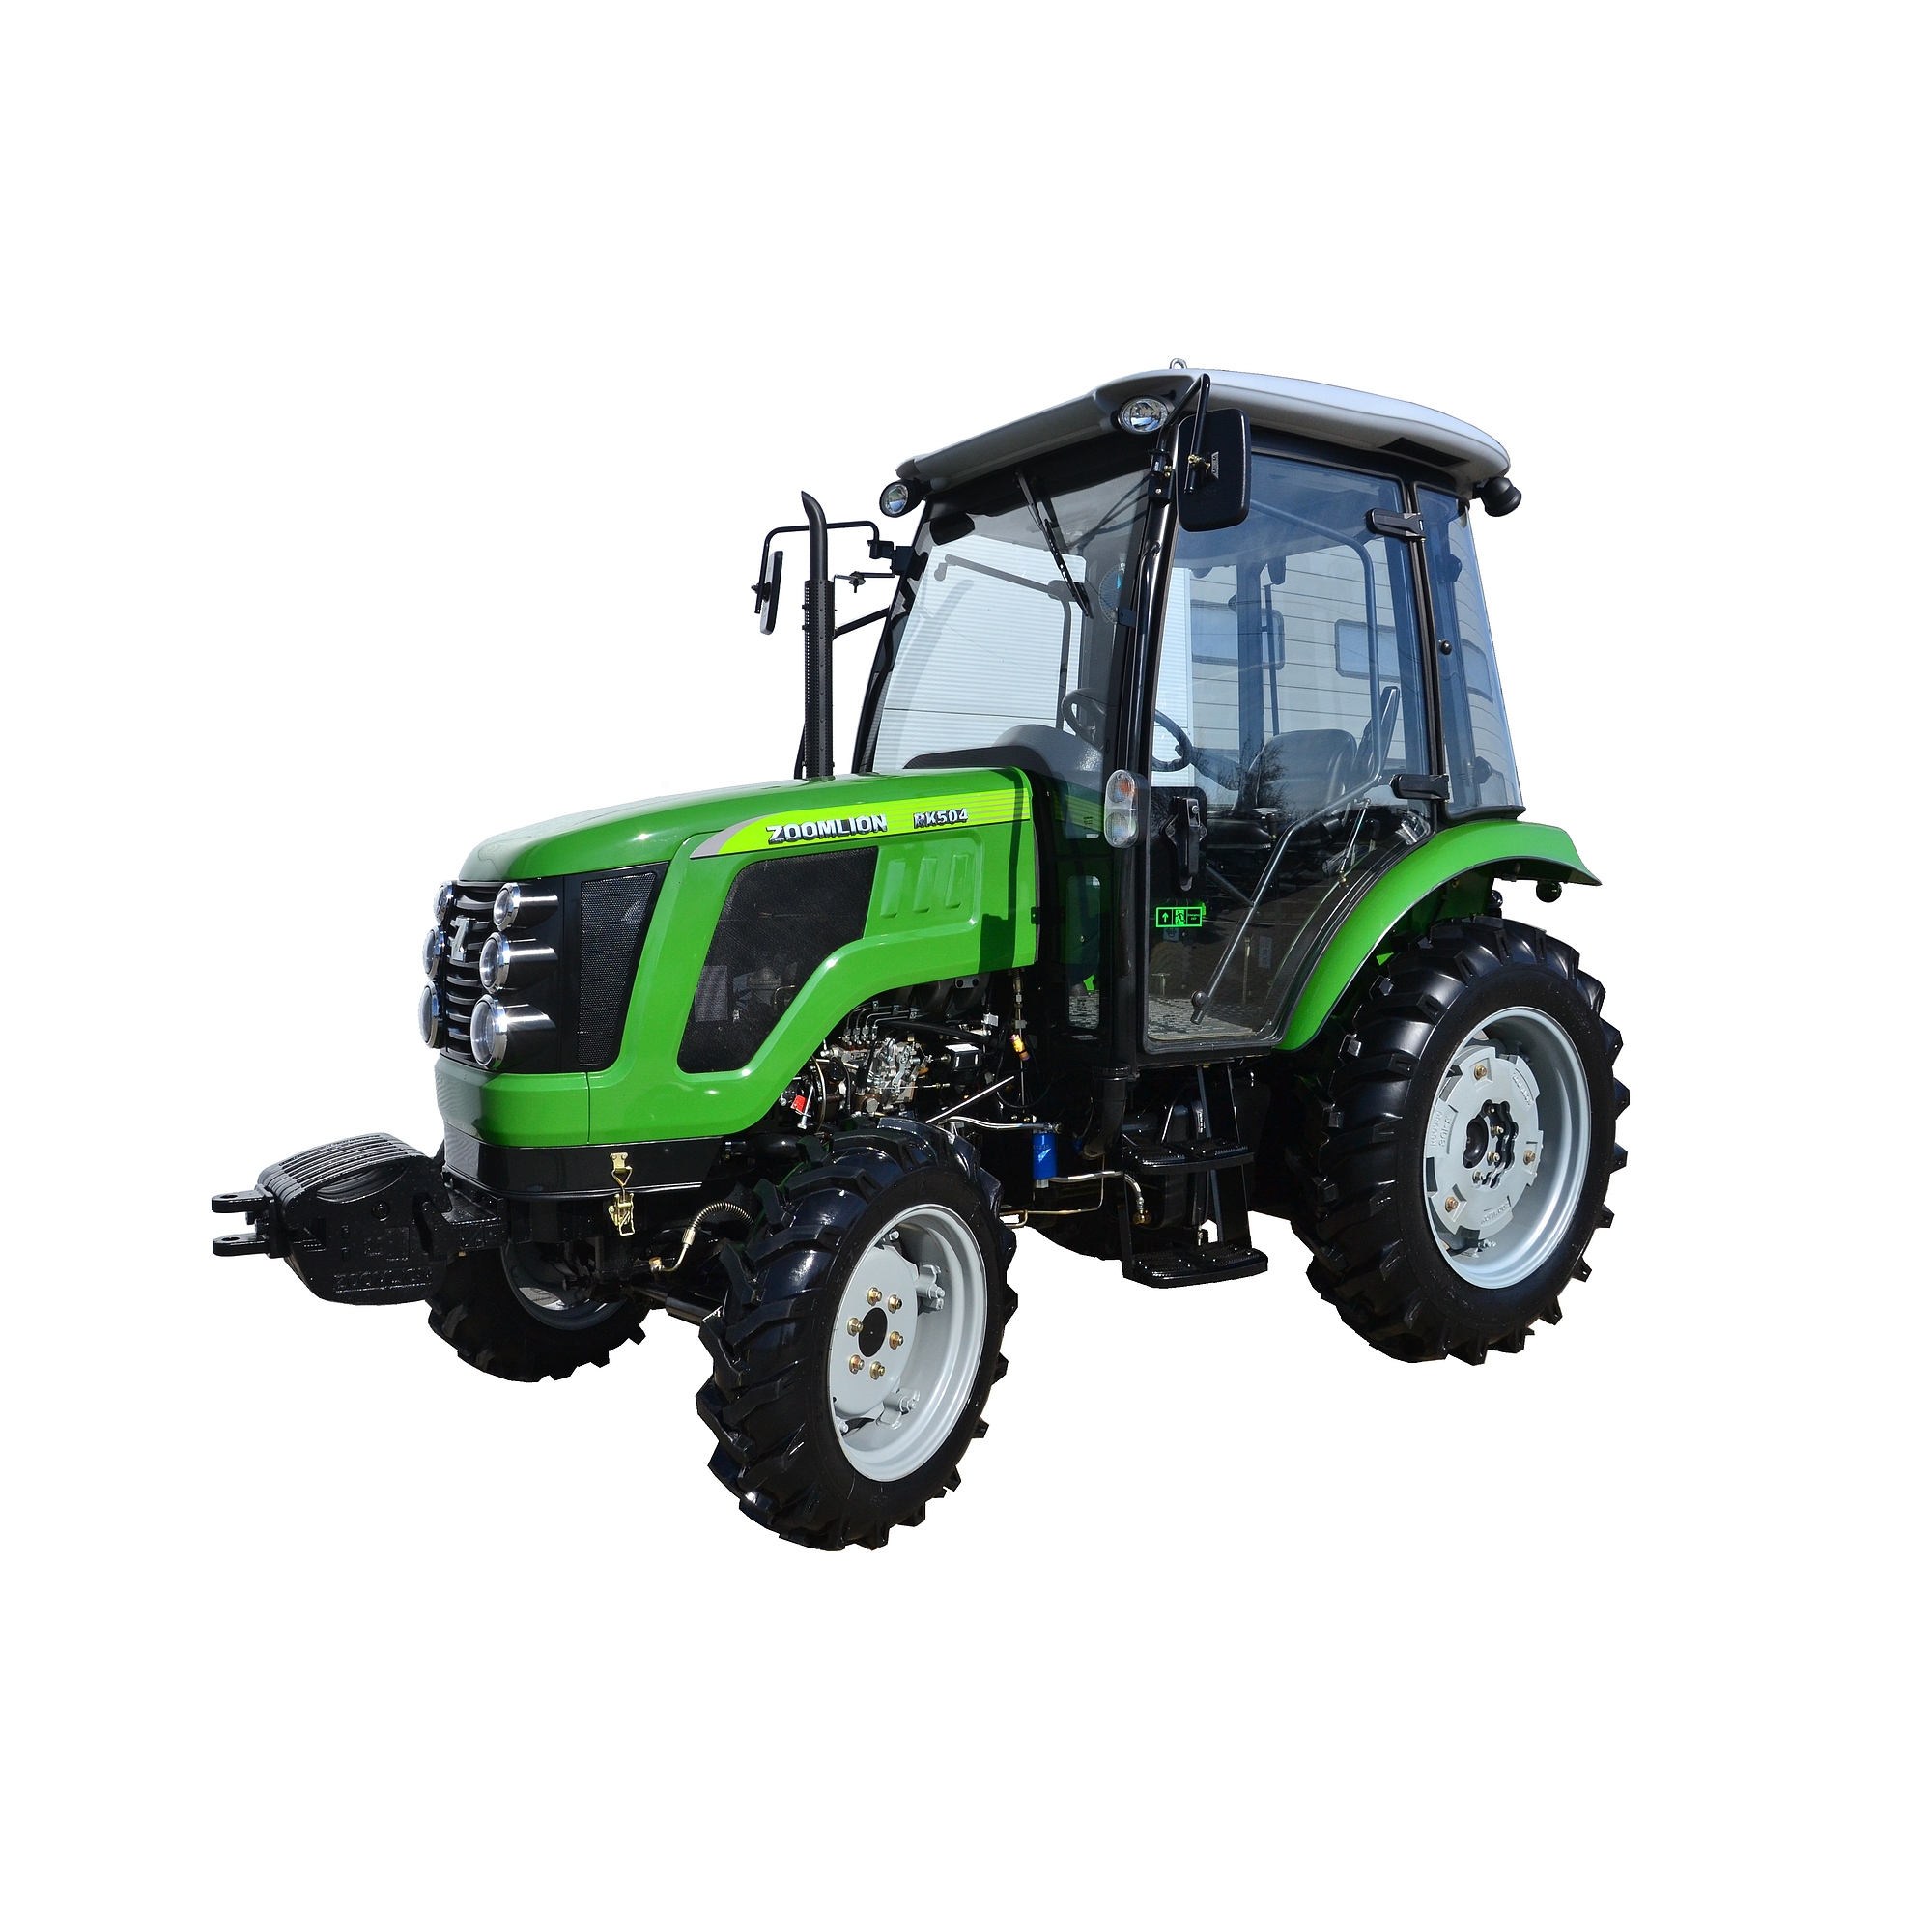 ZOOMLION traktor 50LE fülkés RK504